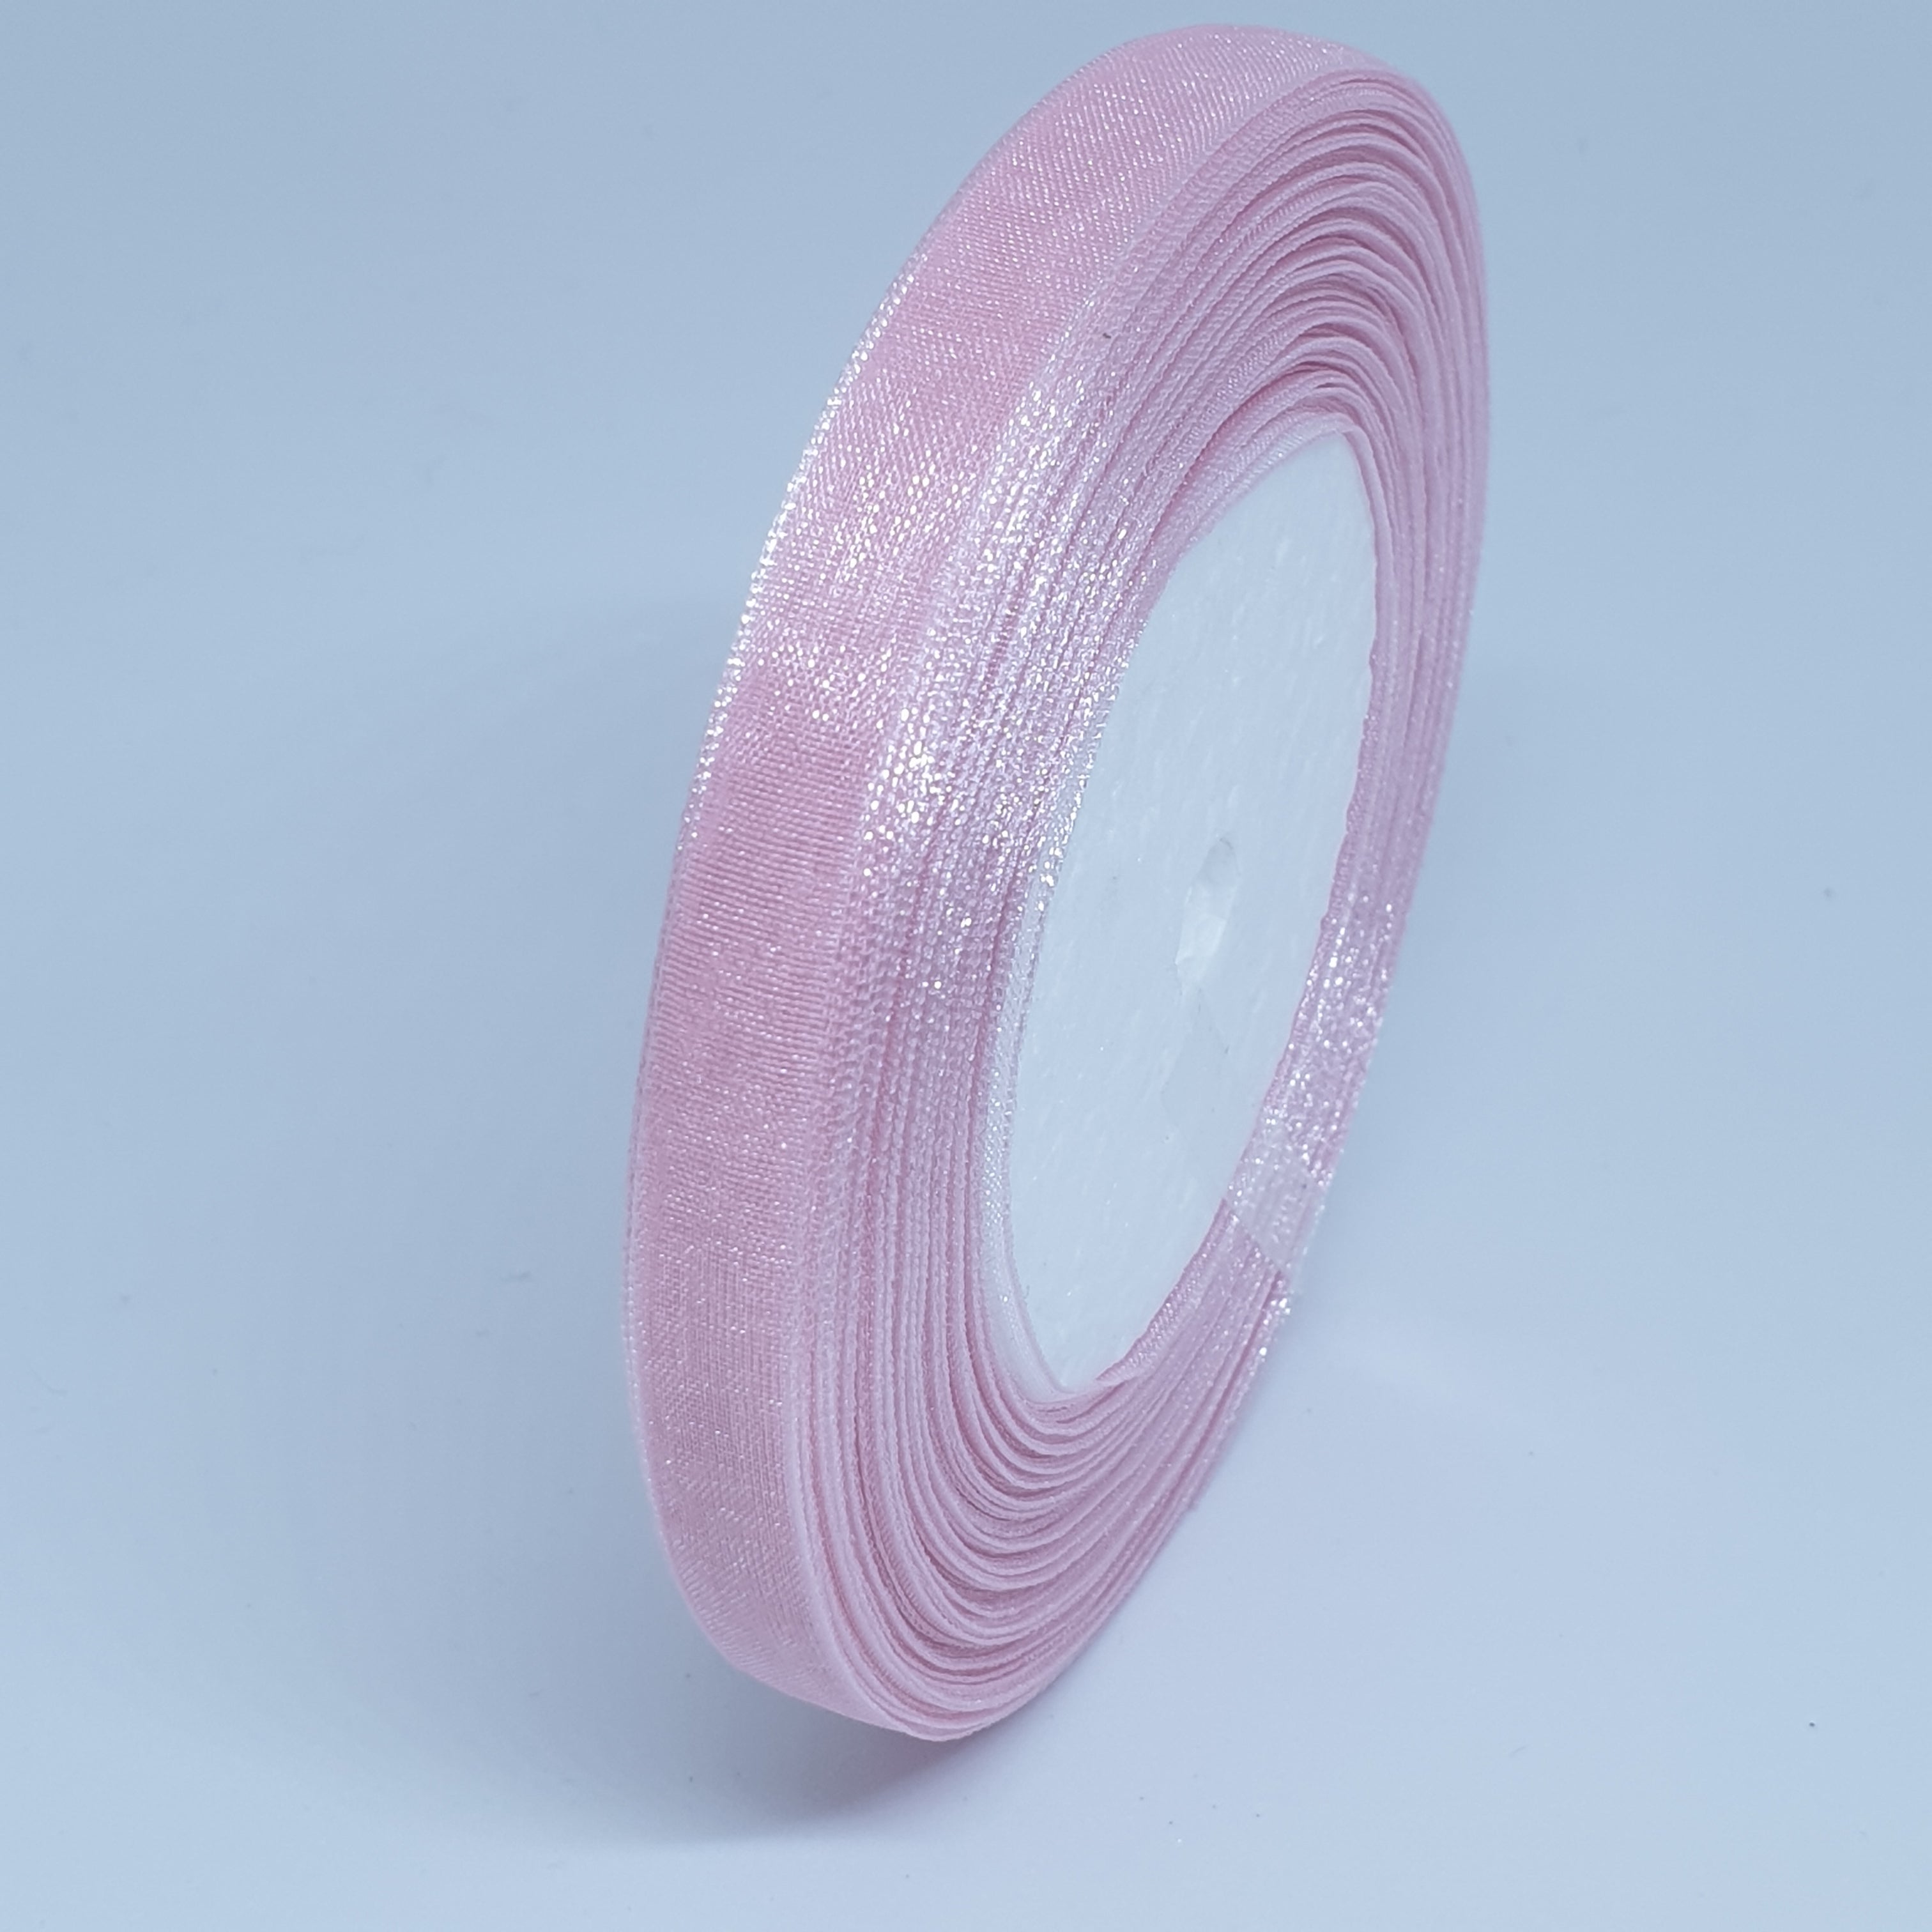 MajorCrafts 10mm 45metres R110 Pink Sheer Organza Fabric Ribbon Roll